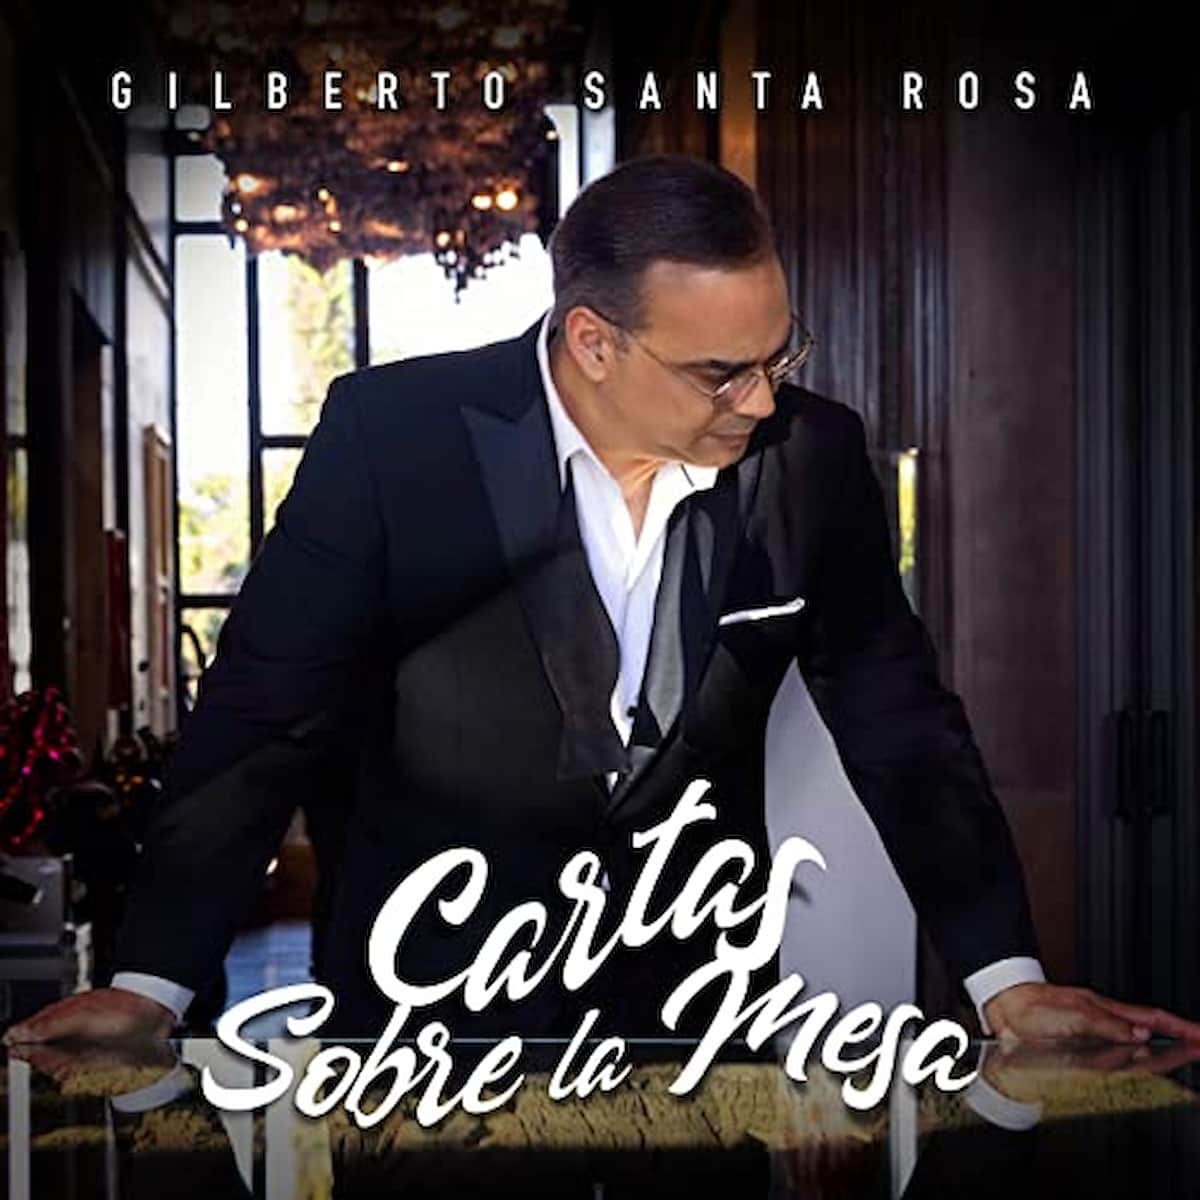 Gilberto Santa Rosa - Cartas Sobre Le Mesa